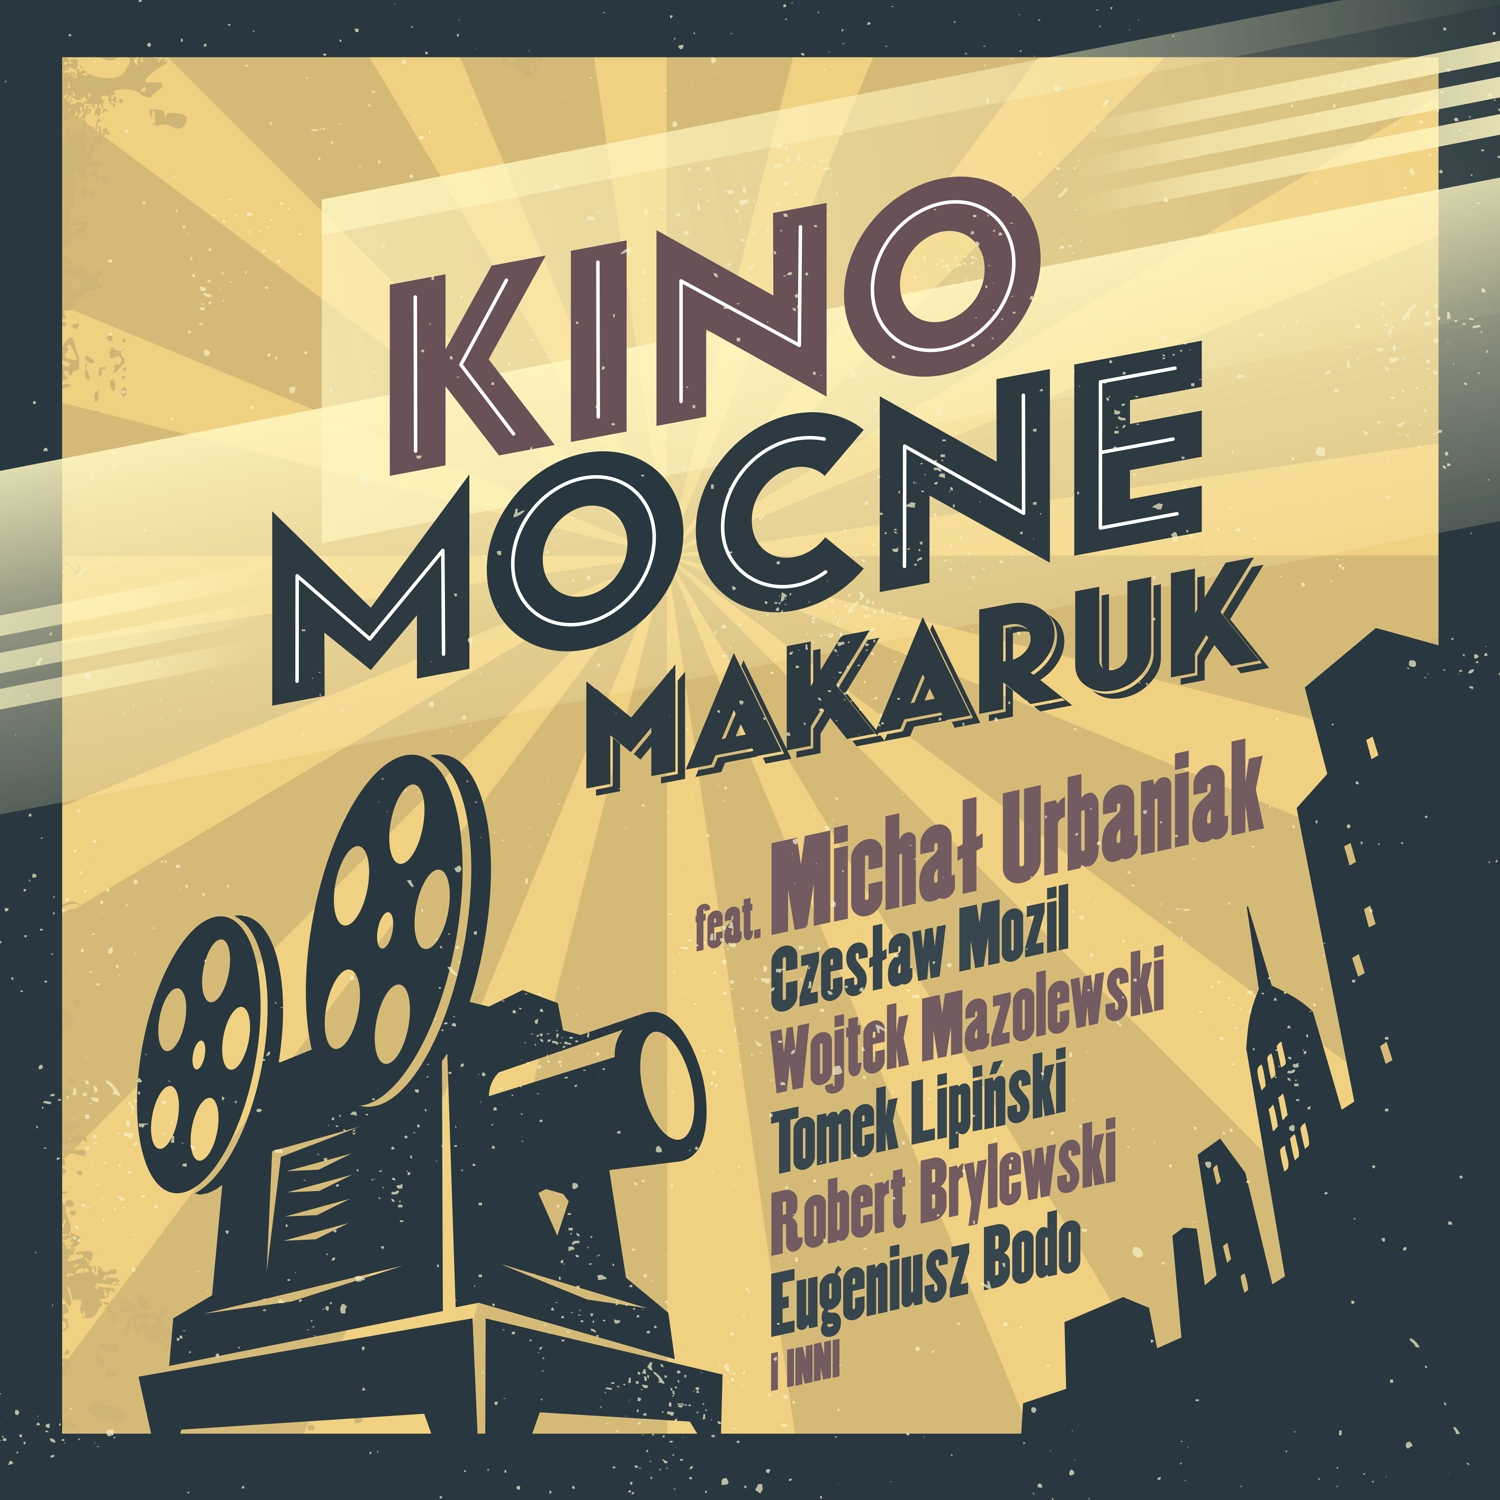 Kino Mocne CVR